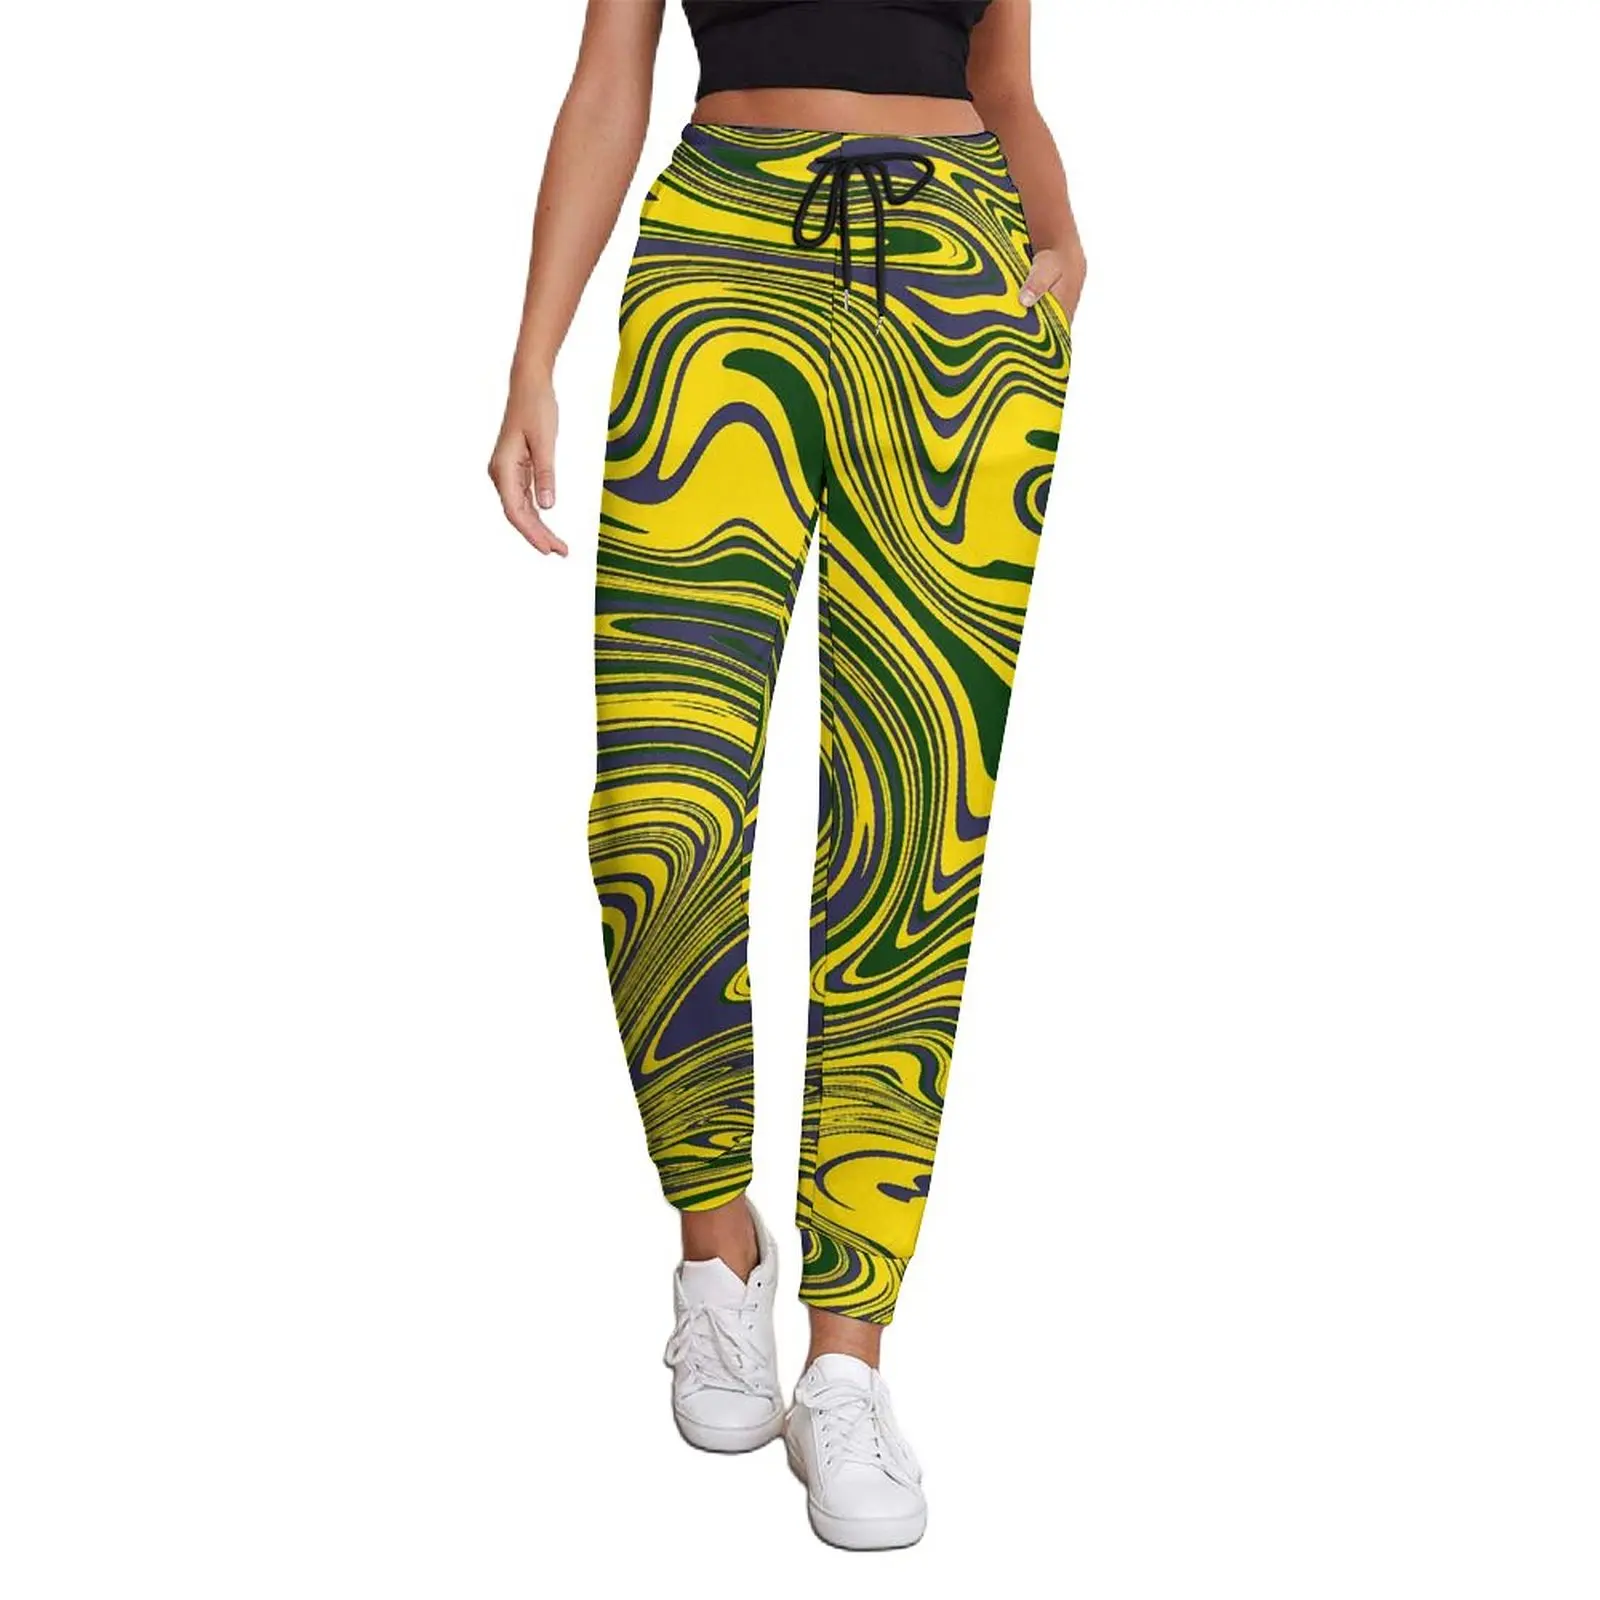 

Мешковатые брюки с принтом Swirls, желтые, зеленые, фиолетовые модные спортивные брюки оверсайз, осенние женские дизайнерские брюки